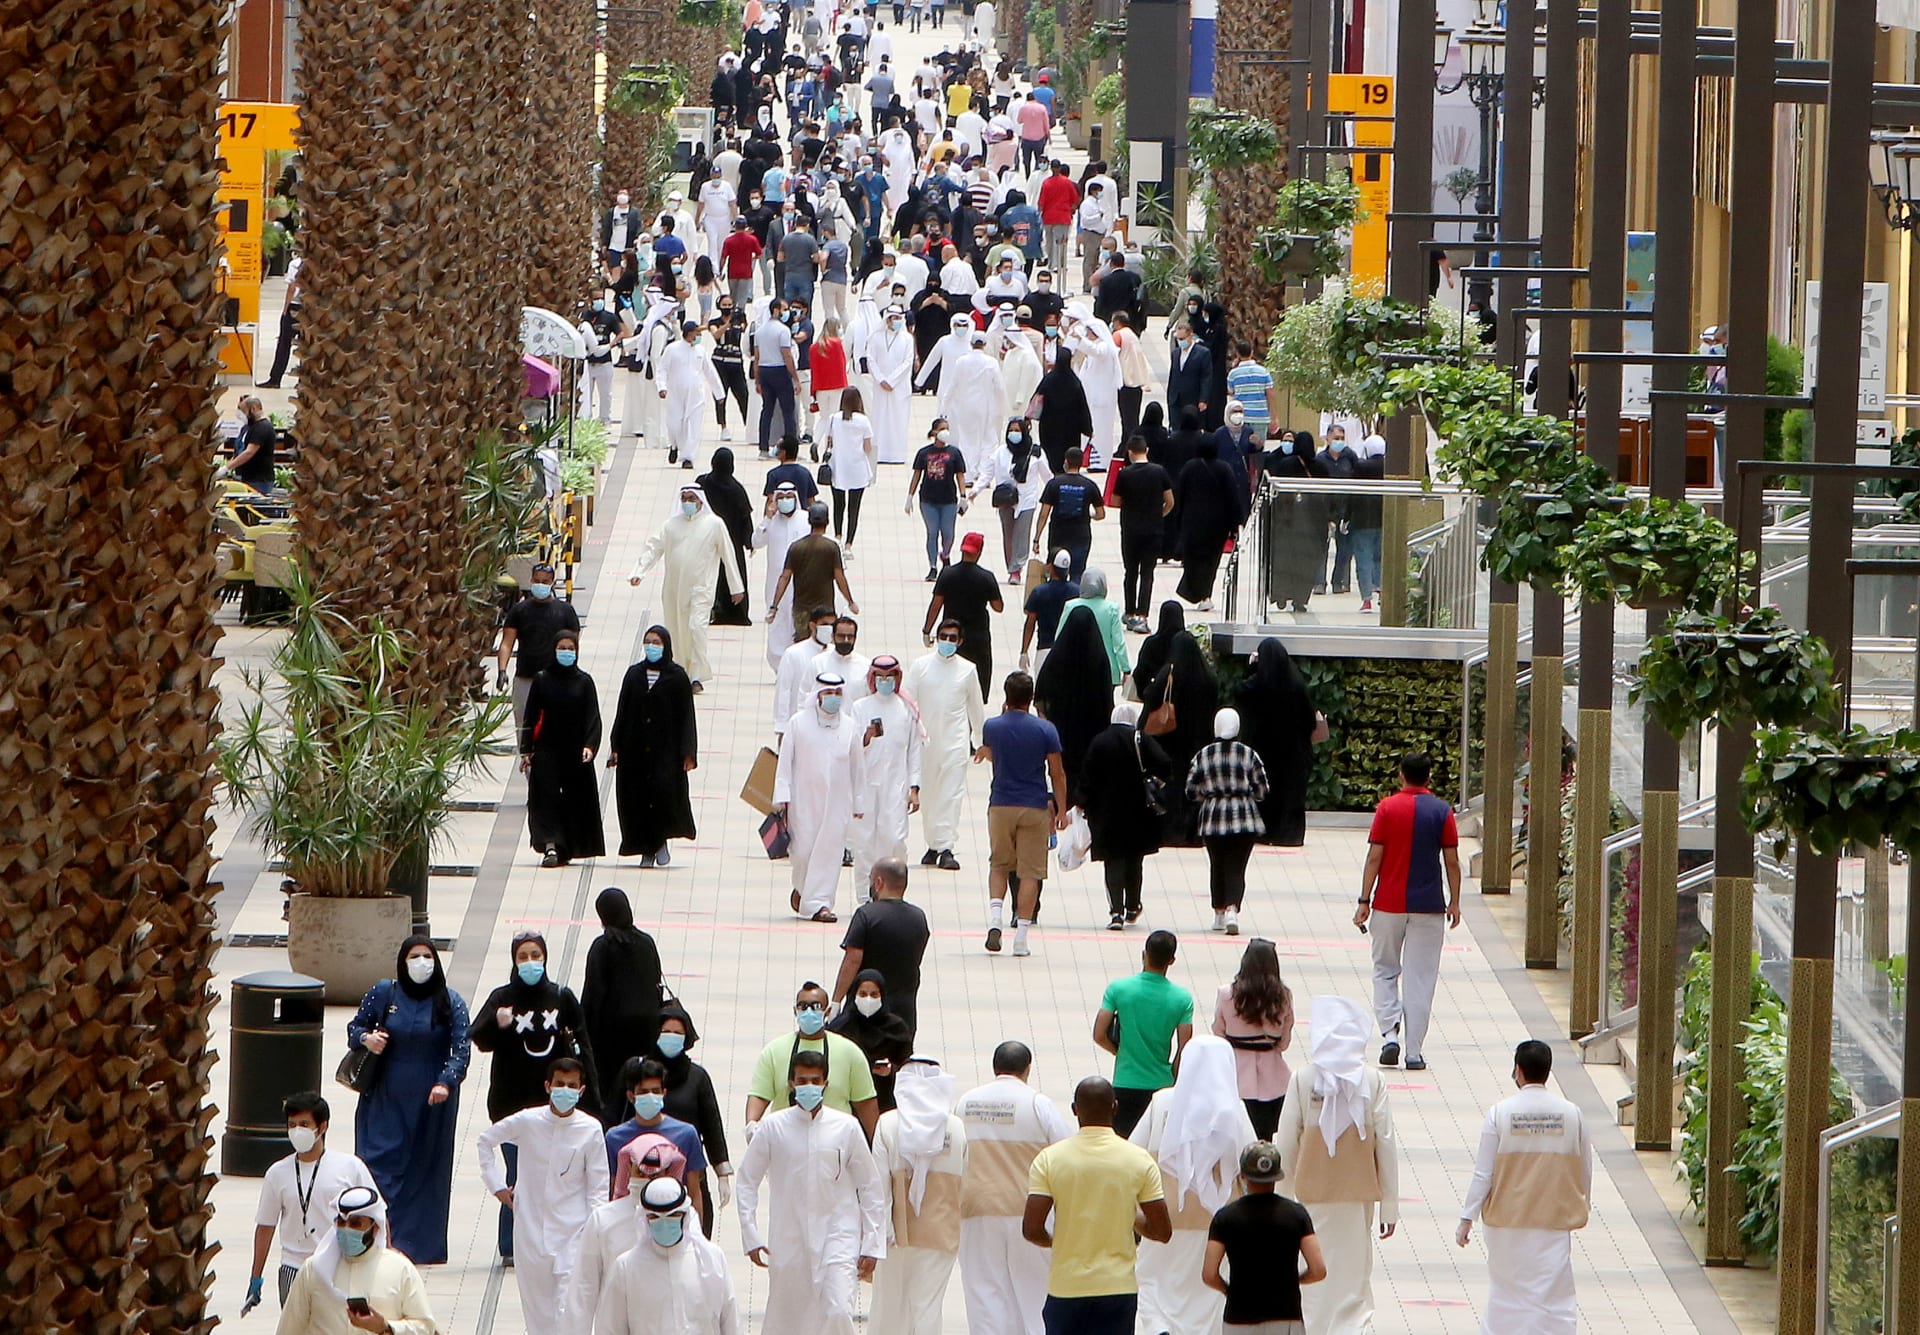 كويتيون يرتدون أقنعة الوجه داخل مجمع الأفنيوز الذي أعيد افتتاحه، أكبر مركز تسوق في البلاد، في 30 يونيو 2020